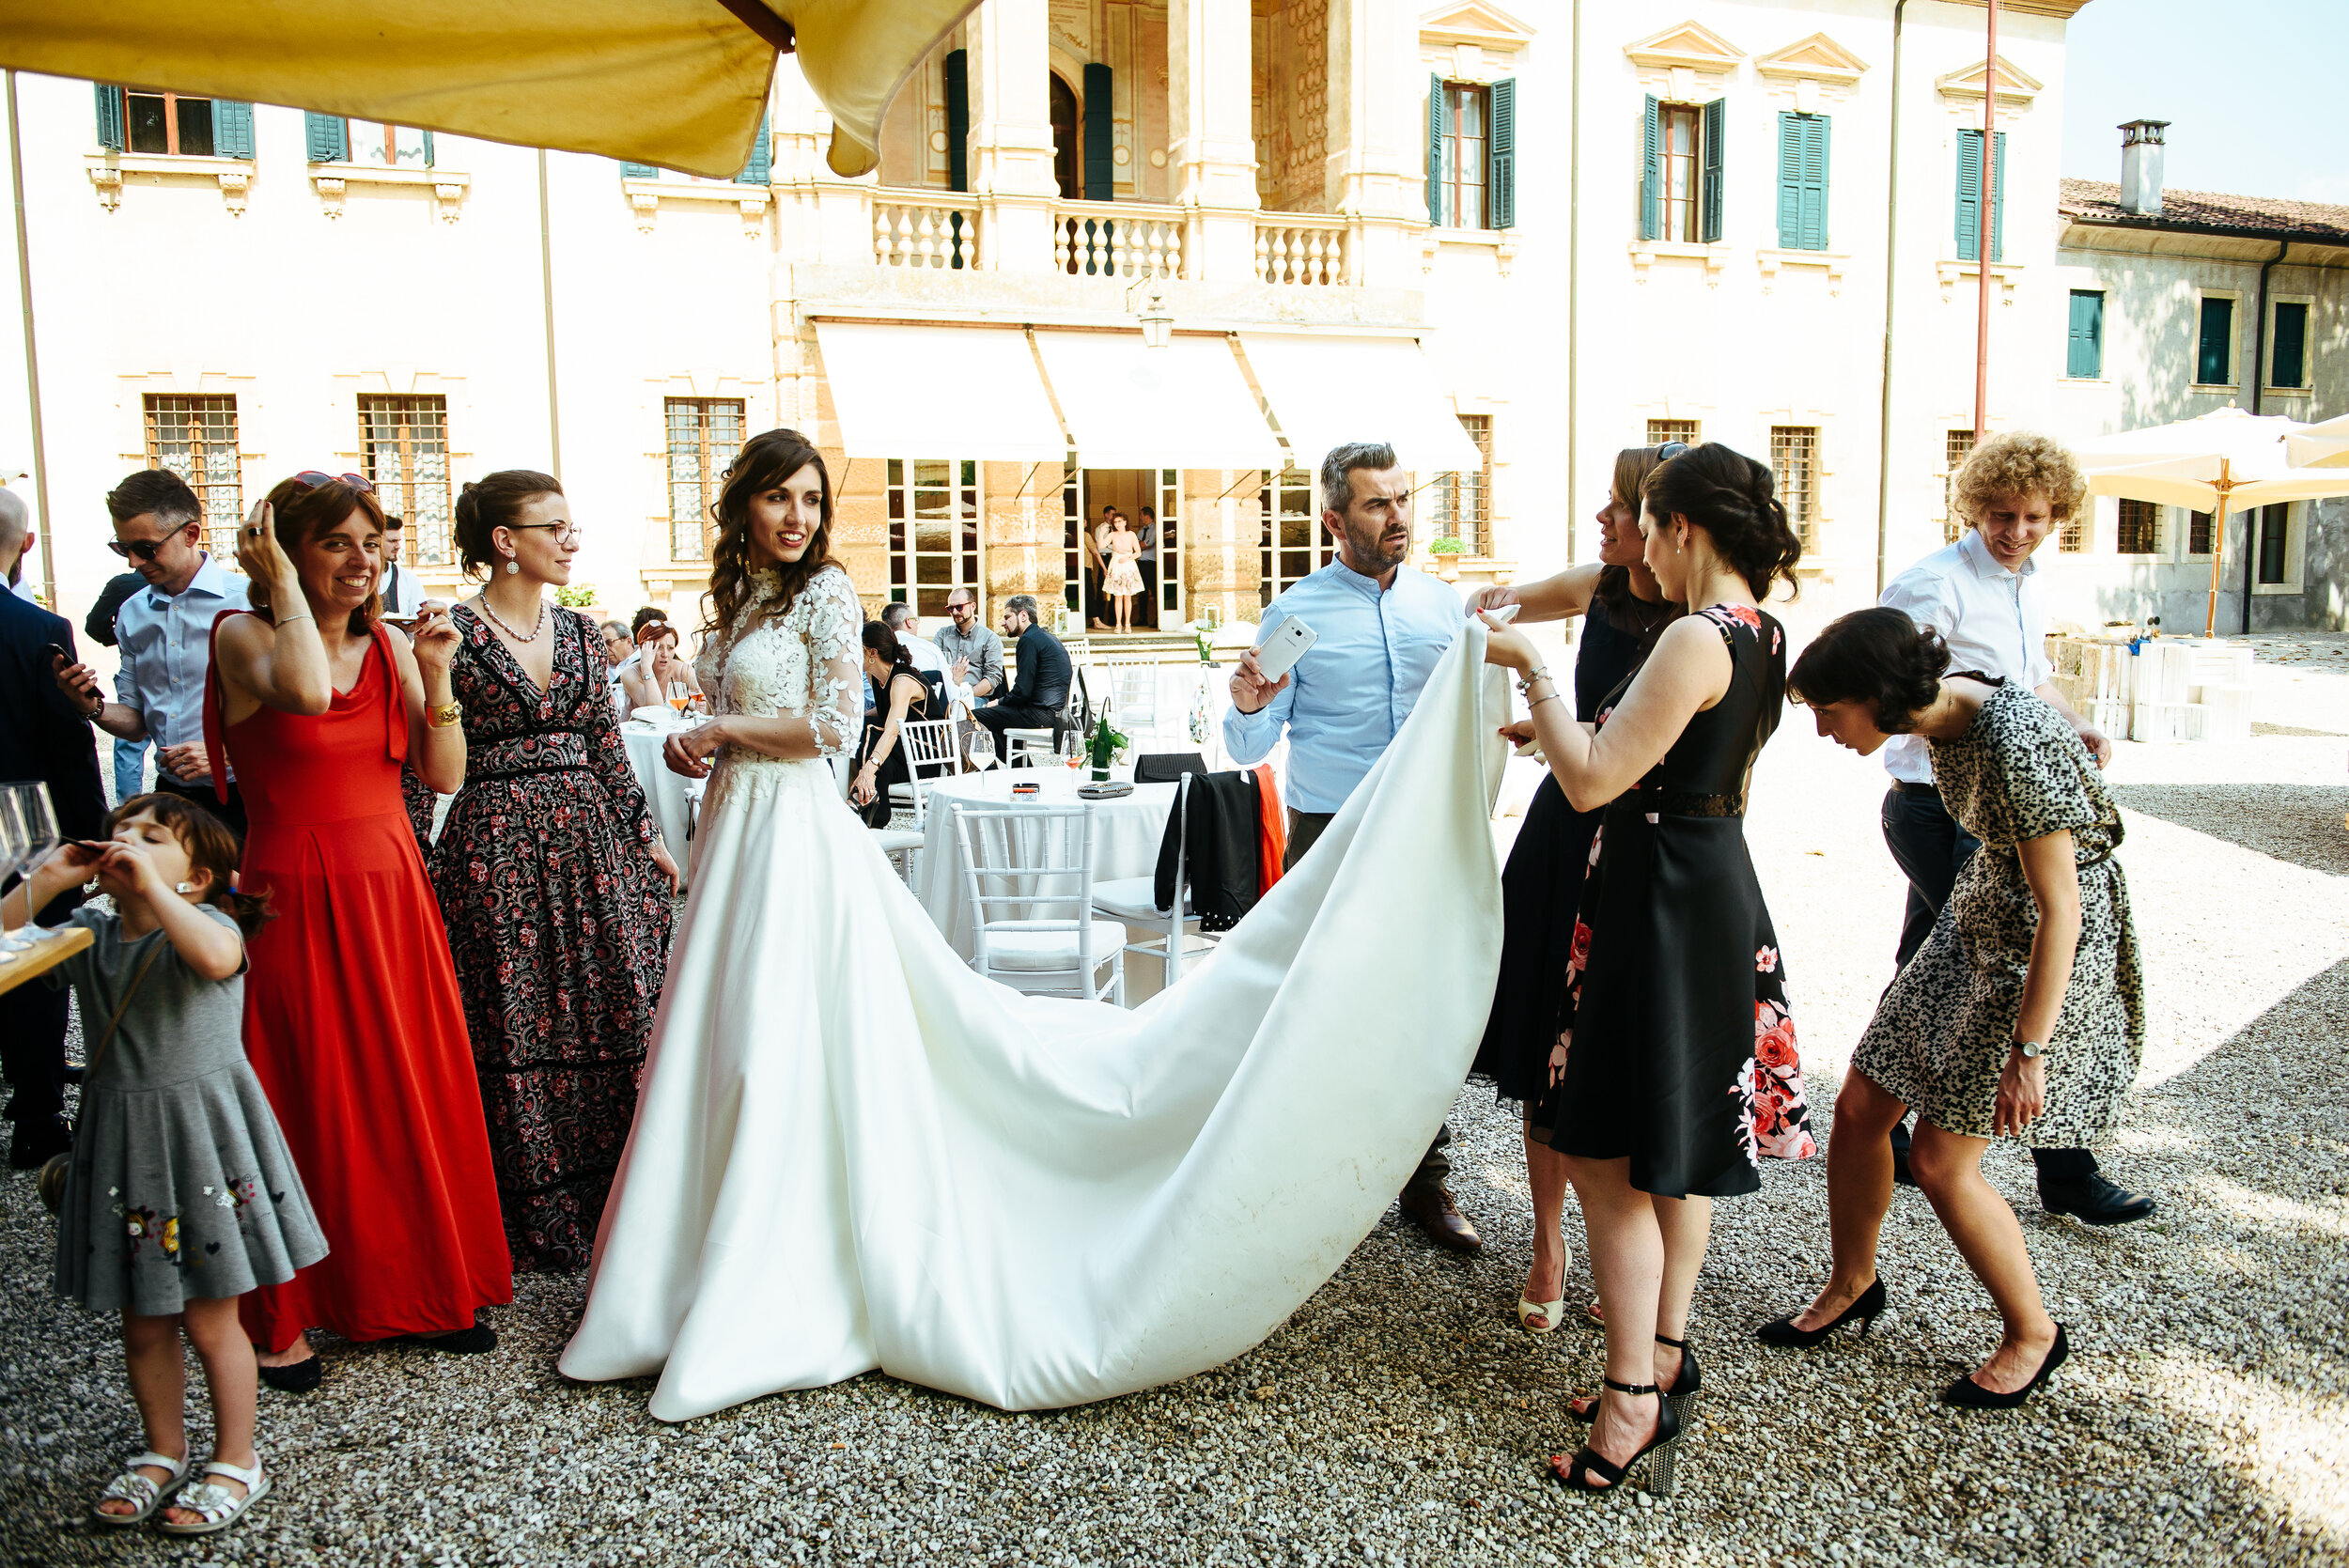 wedding_villa_dionisi_cerea_verona_ivo_elisa0043.jpg